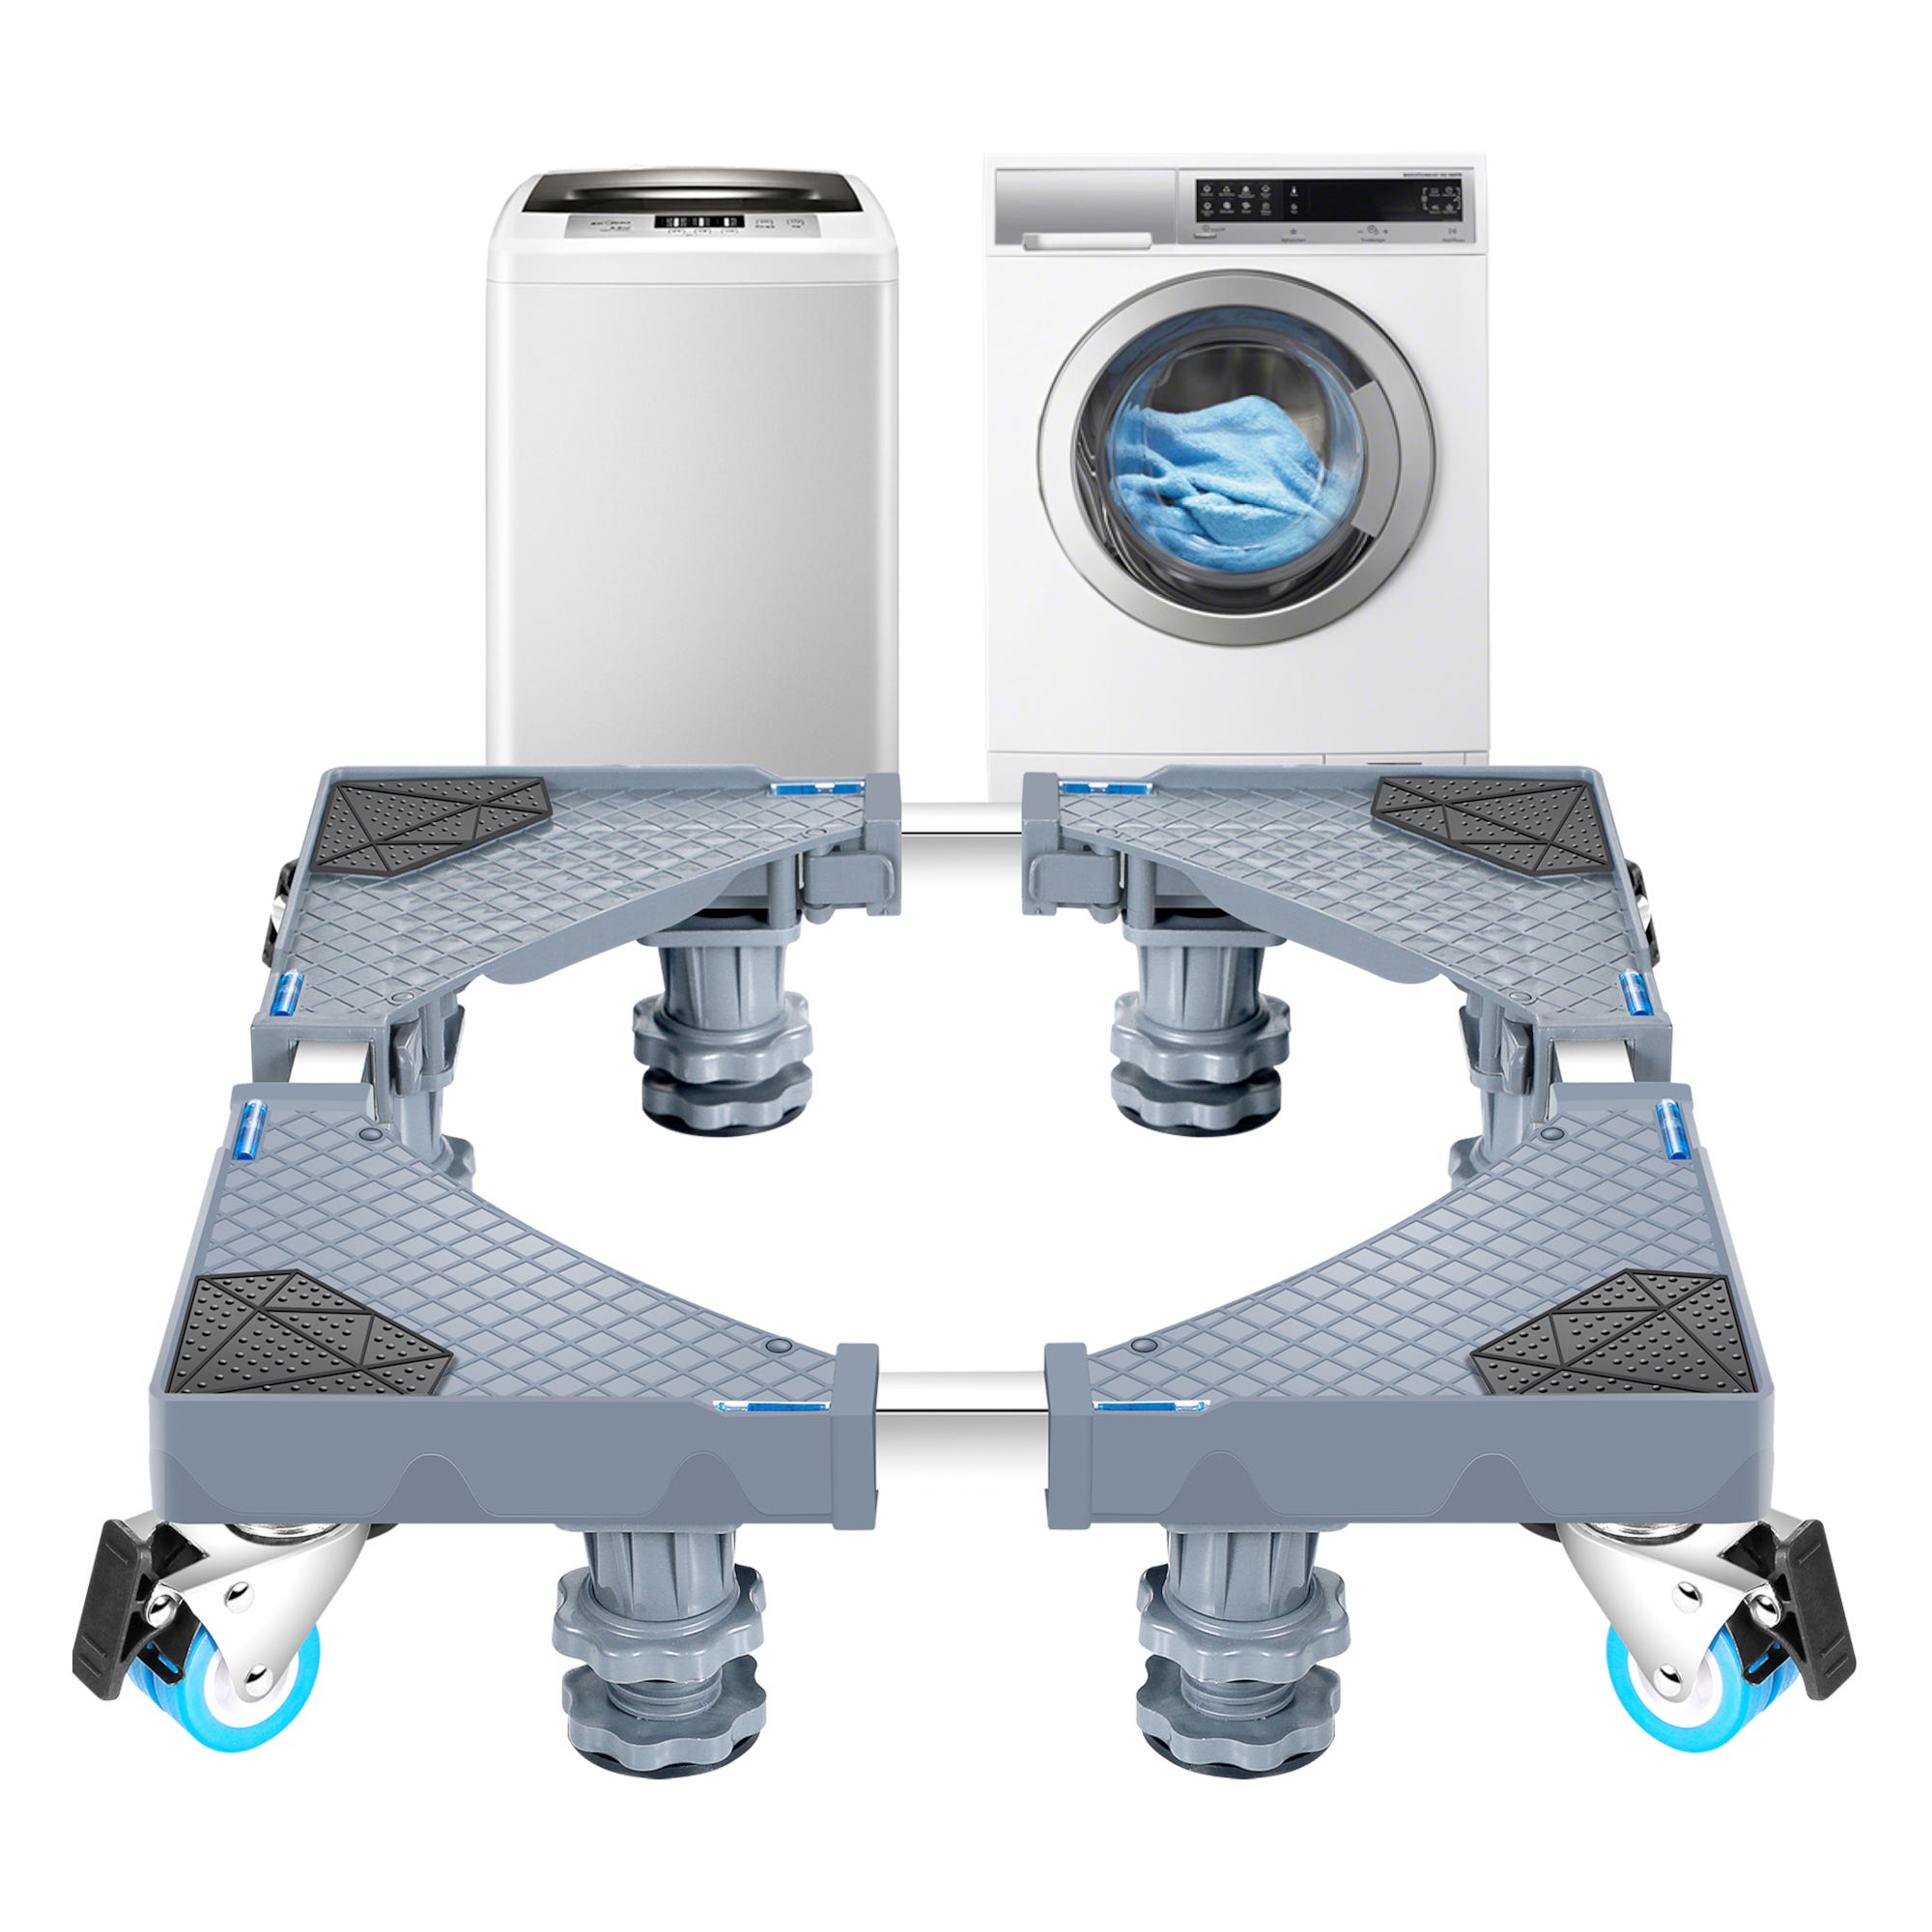 Support à roulettes Maisach pour lave-linge et réfrigérateur ajustable en  taille [en.casa]